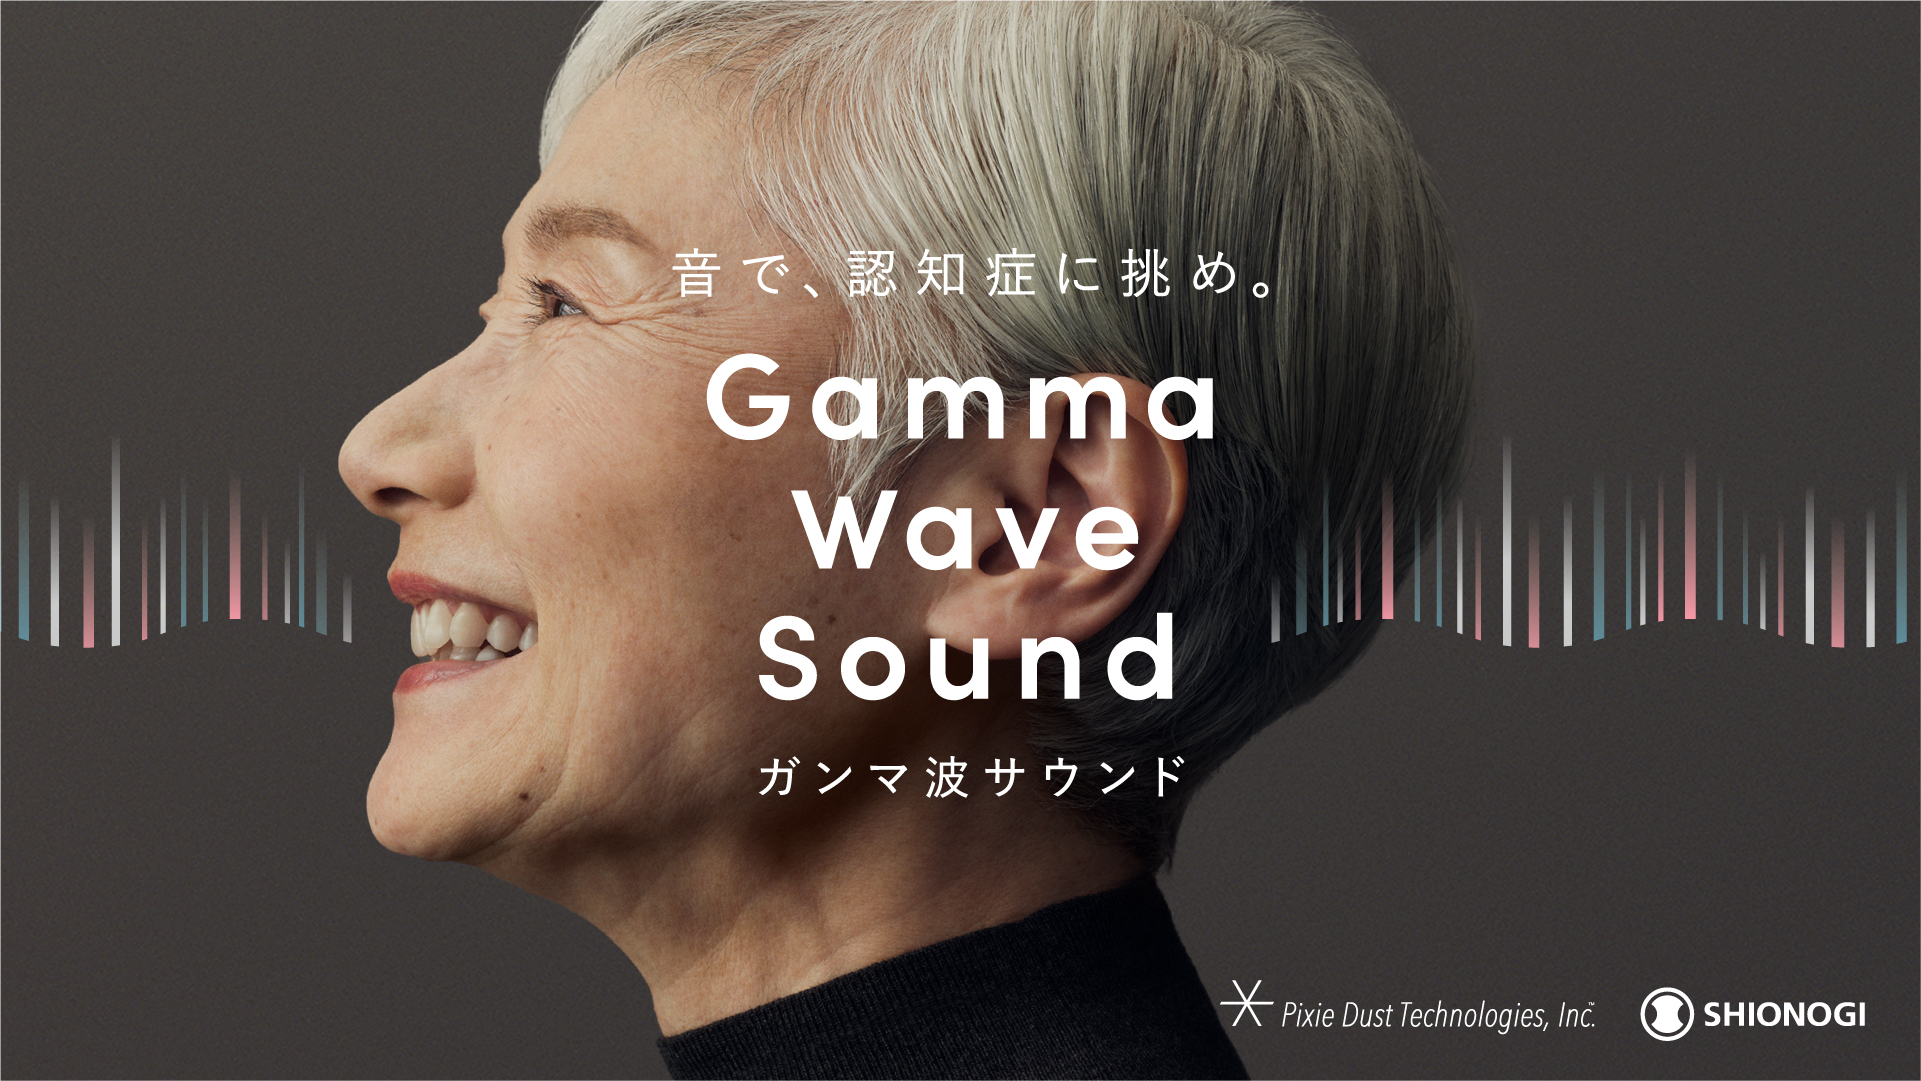 音で認知症に挑む「ガンマ波サウンド」の取り組み